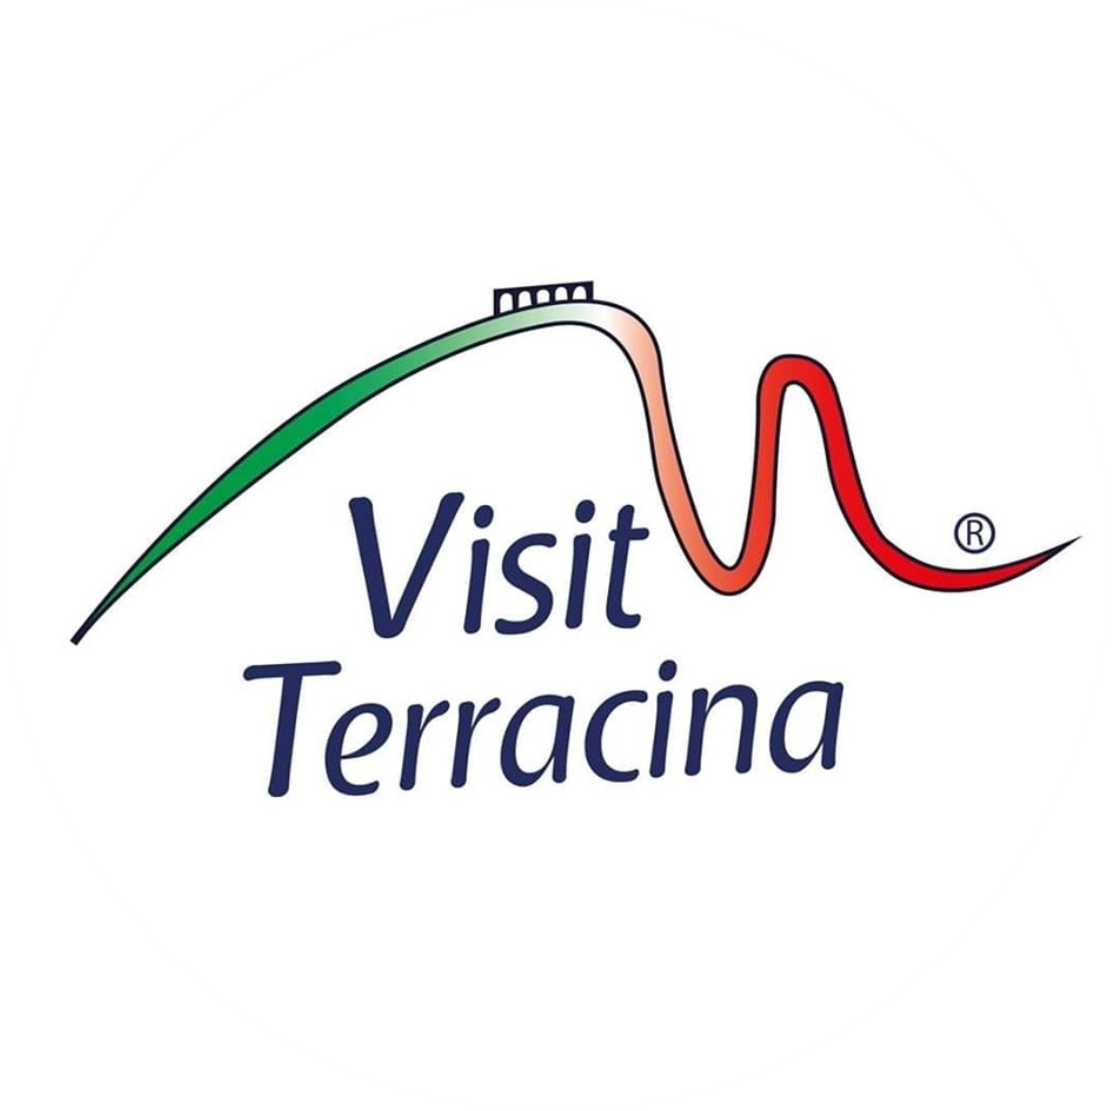 Visit Terracina